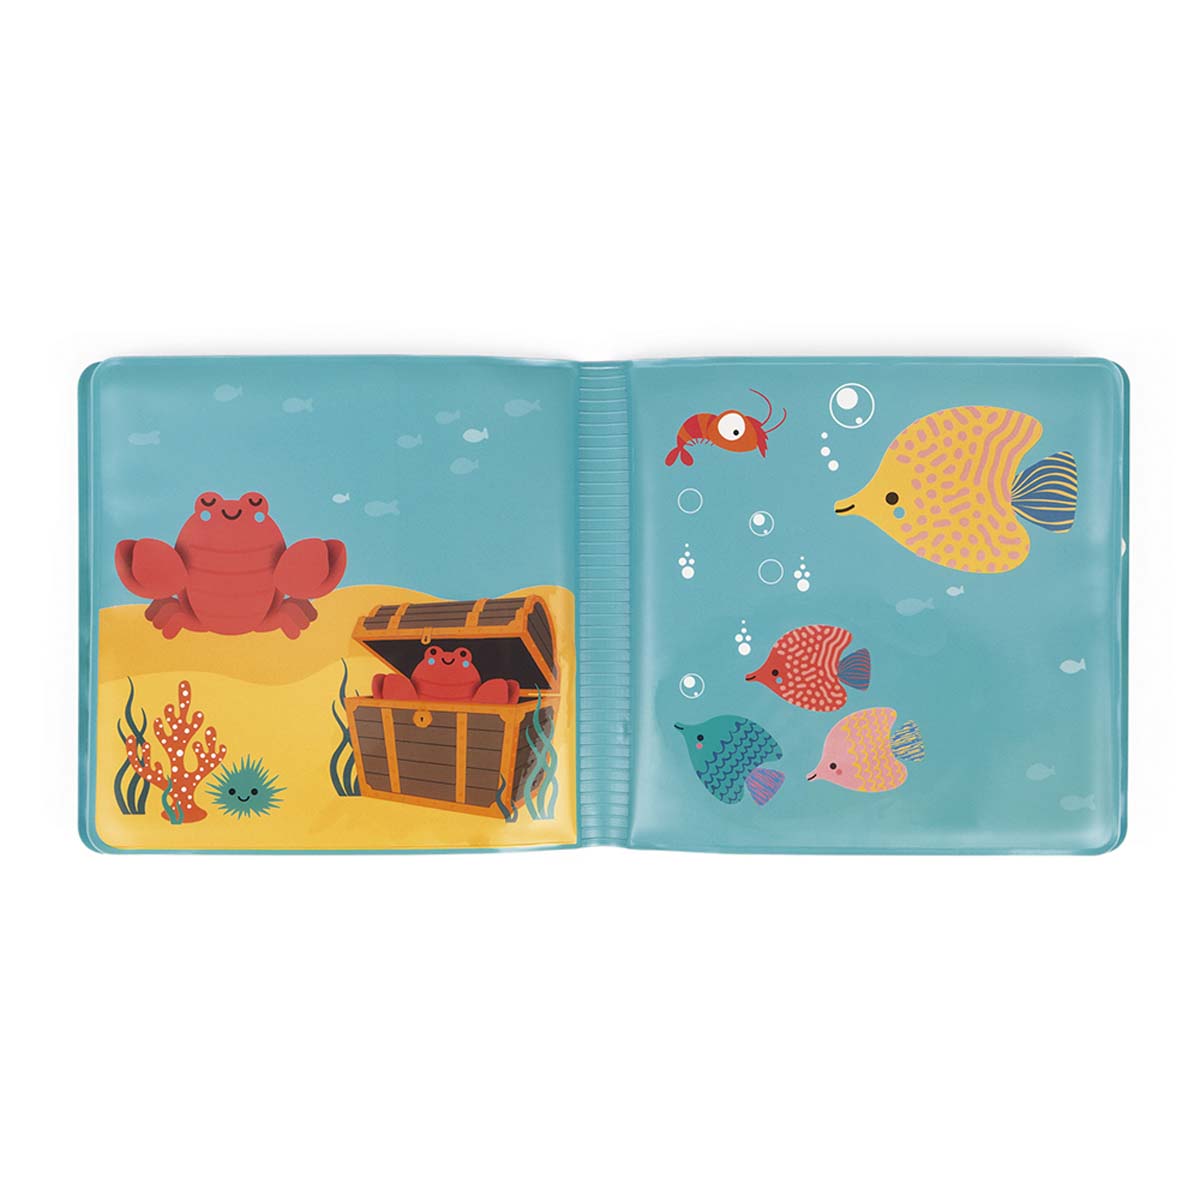 Mijn magische badboek van Janod is een bijzonder badboekje om de onderwaterwereld te ontdekken. Als het boekje nat wordt komen er dieren tevoorschijn. Welke dieren zie jij? Een leuk cadeau! Vanaf 10 maanden. VanZus